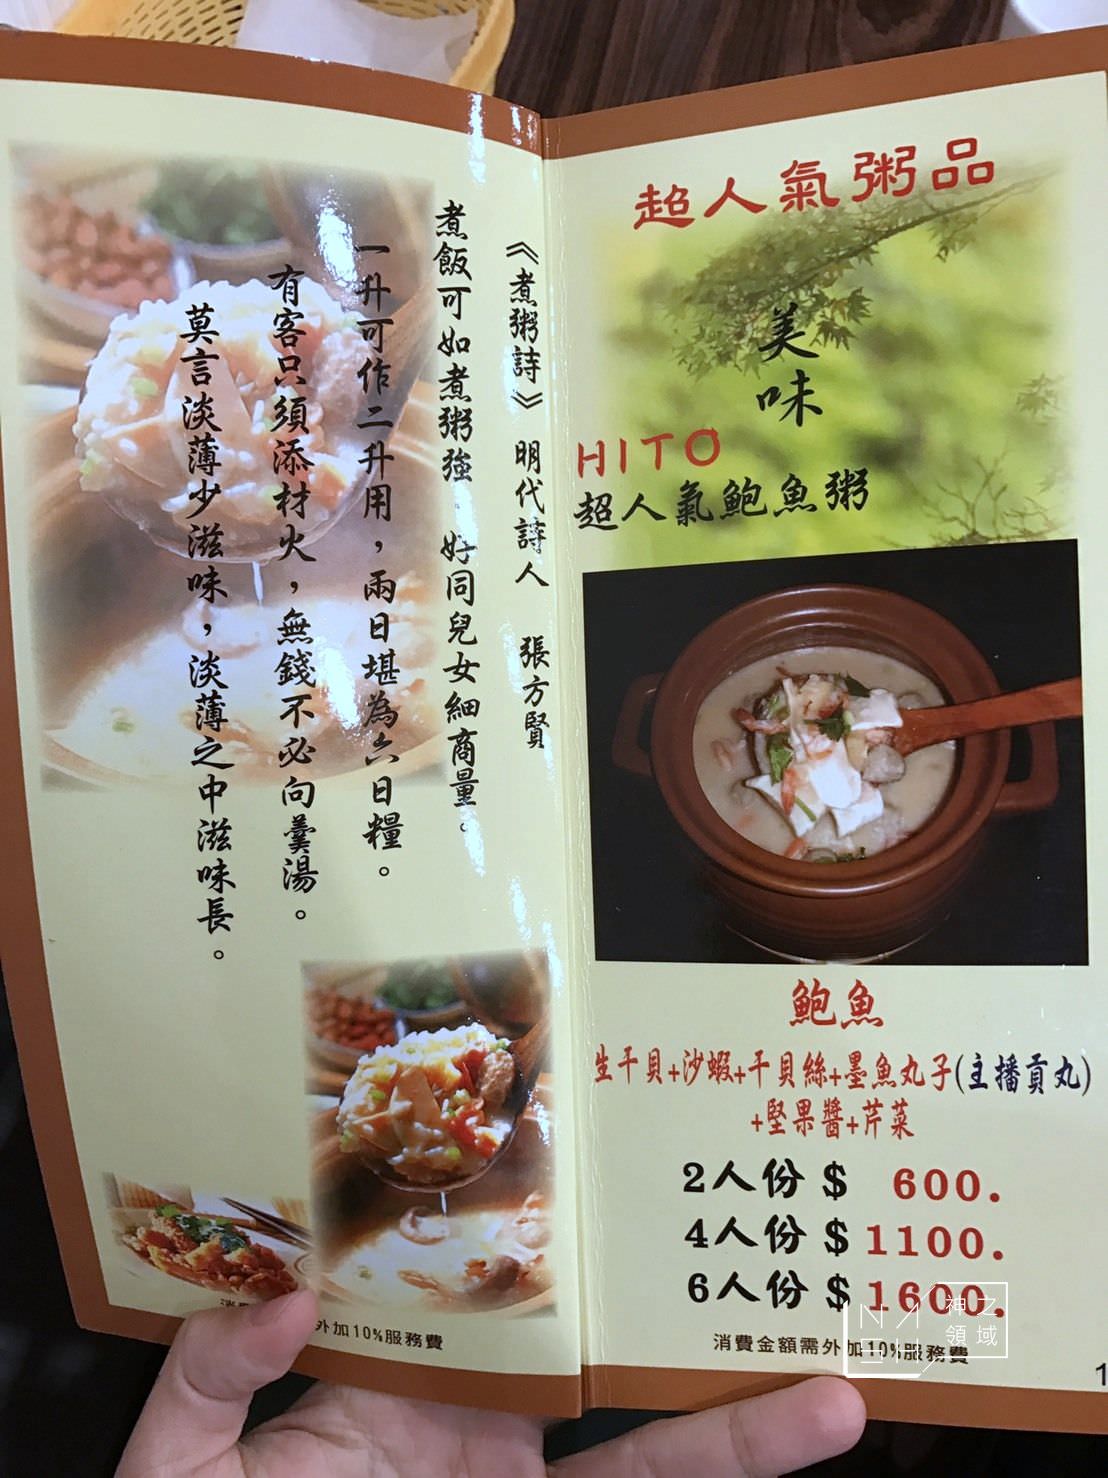 板橋砂鍋粥,六必居潮州沙鍋粥